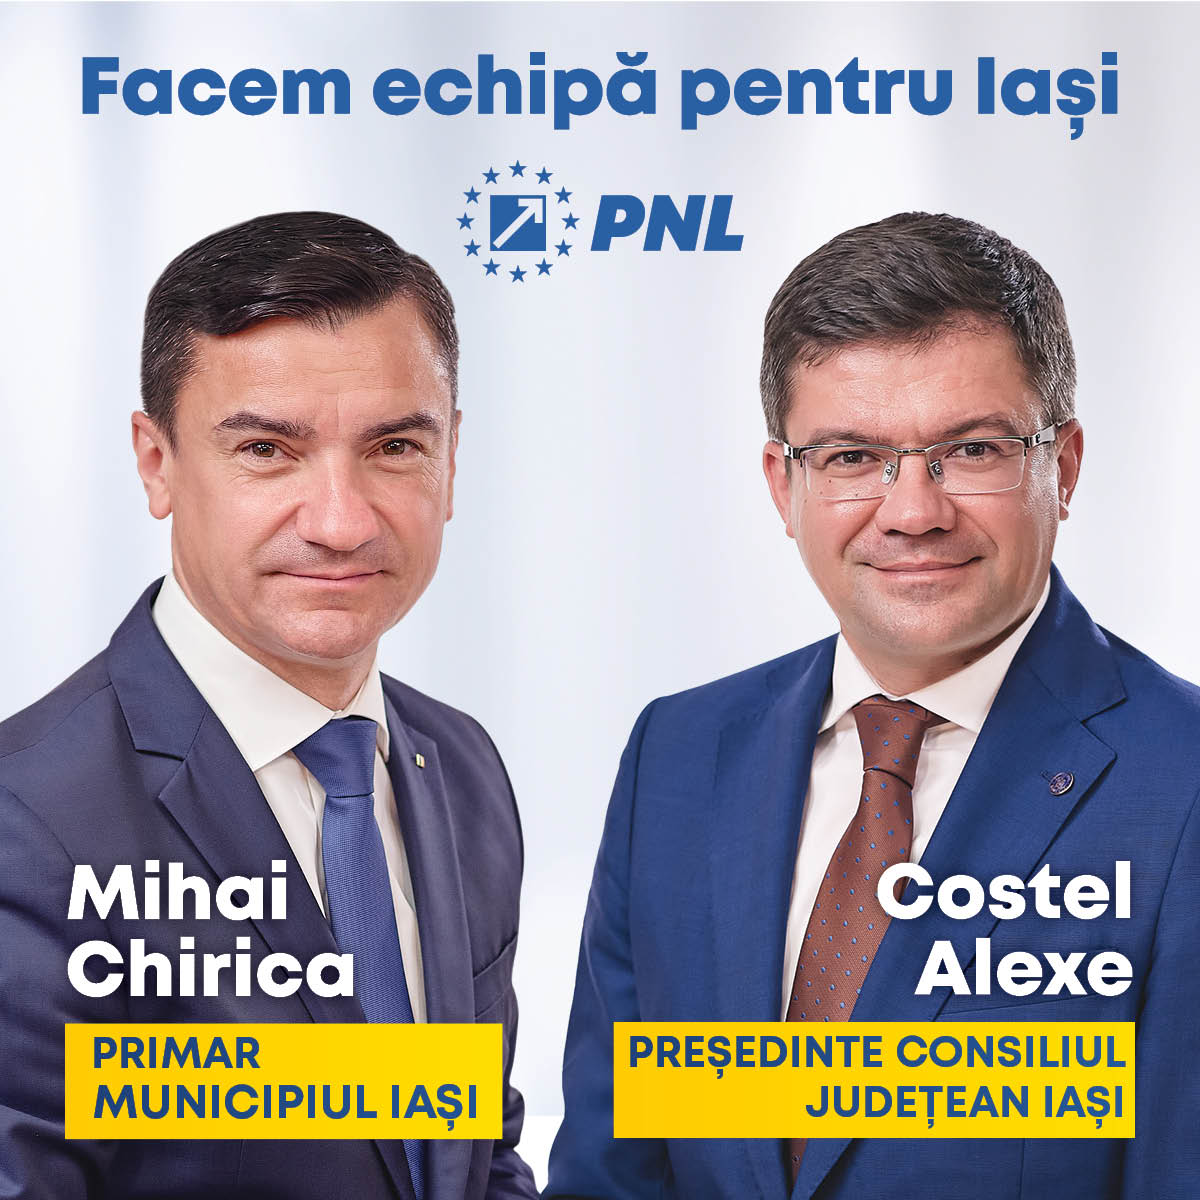 Facem echipă pentru Iași